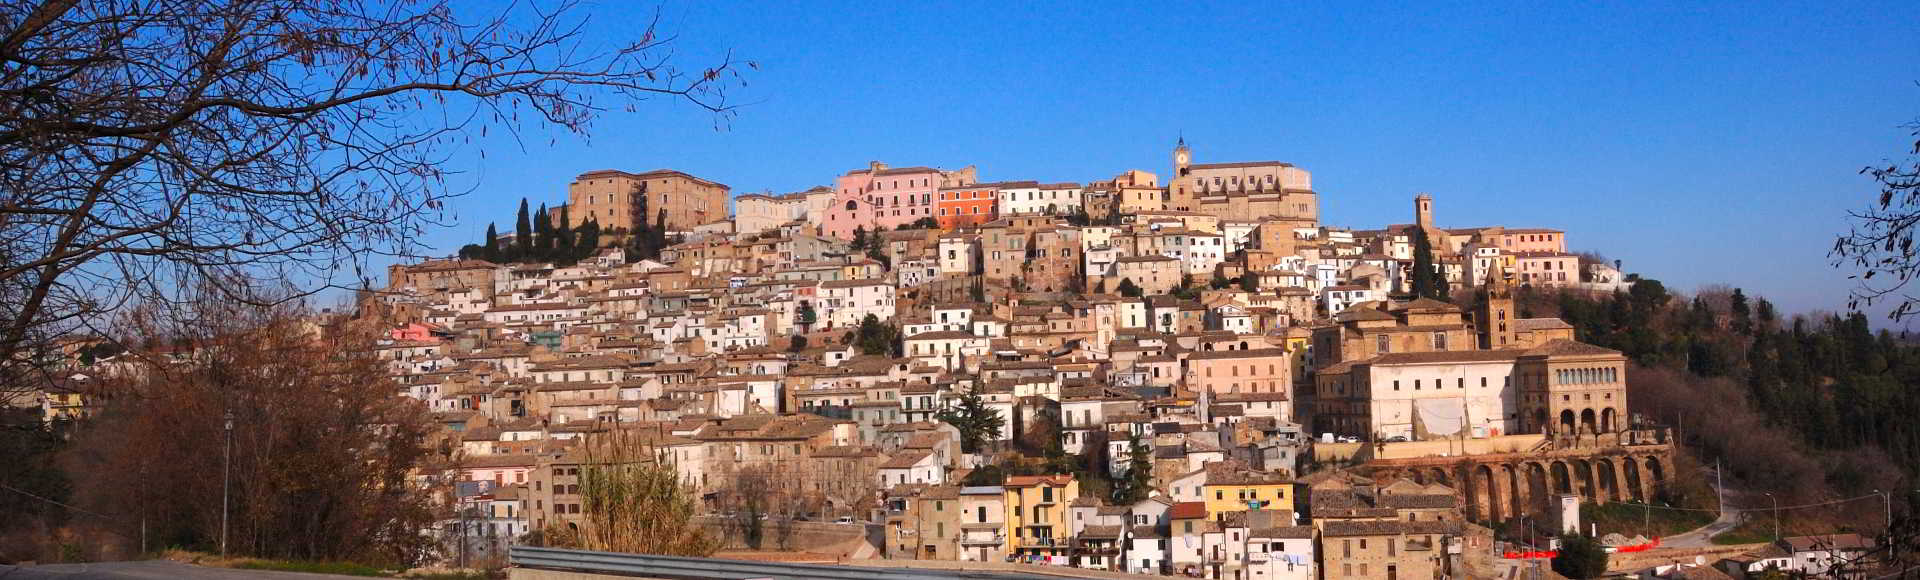 Panorama di Loreto Aprutino in Abruzzo